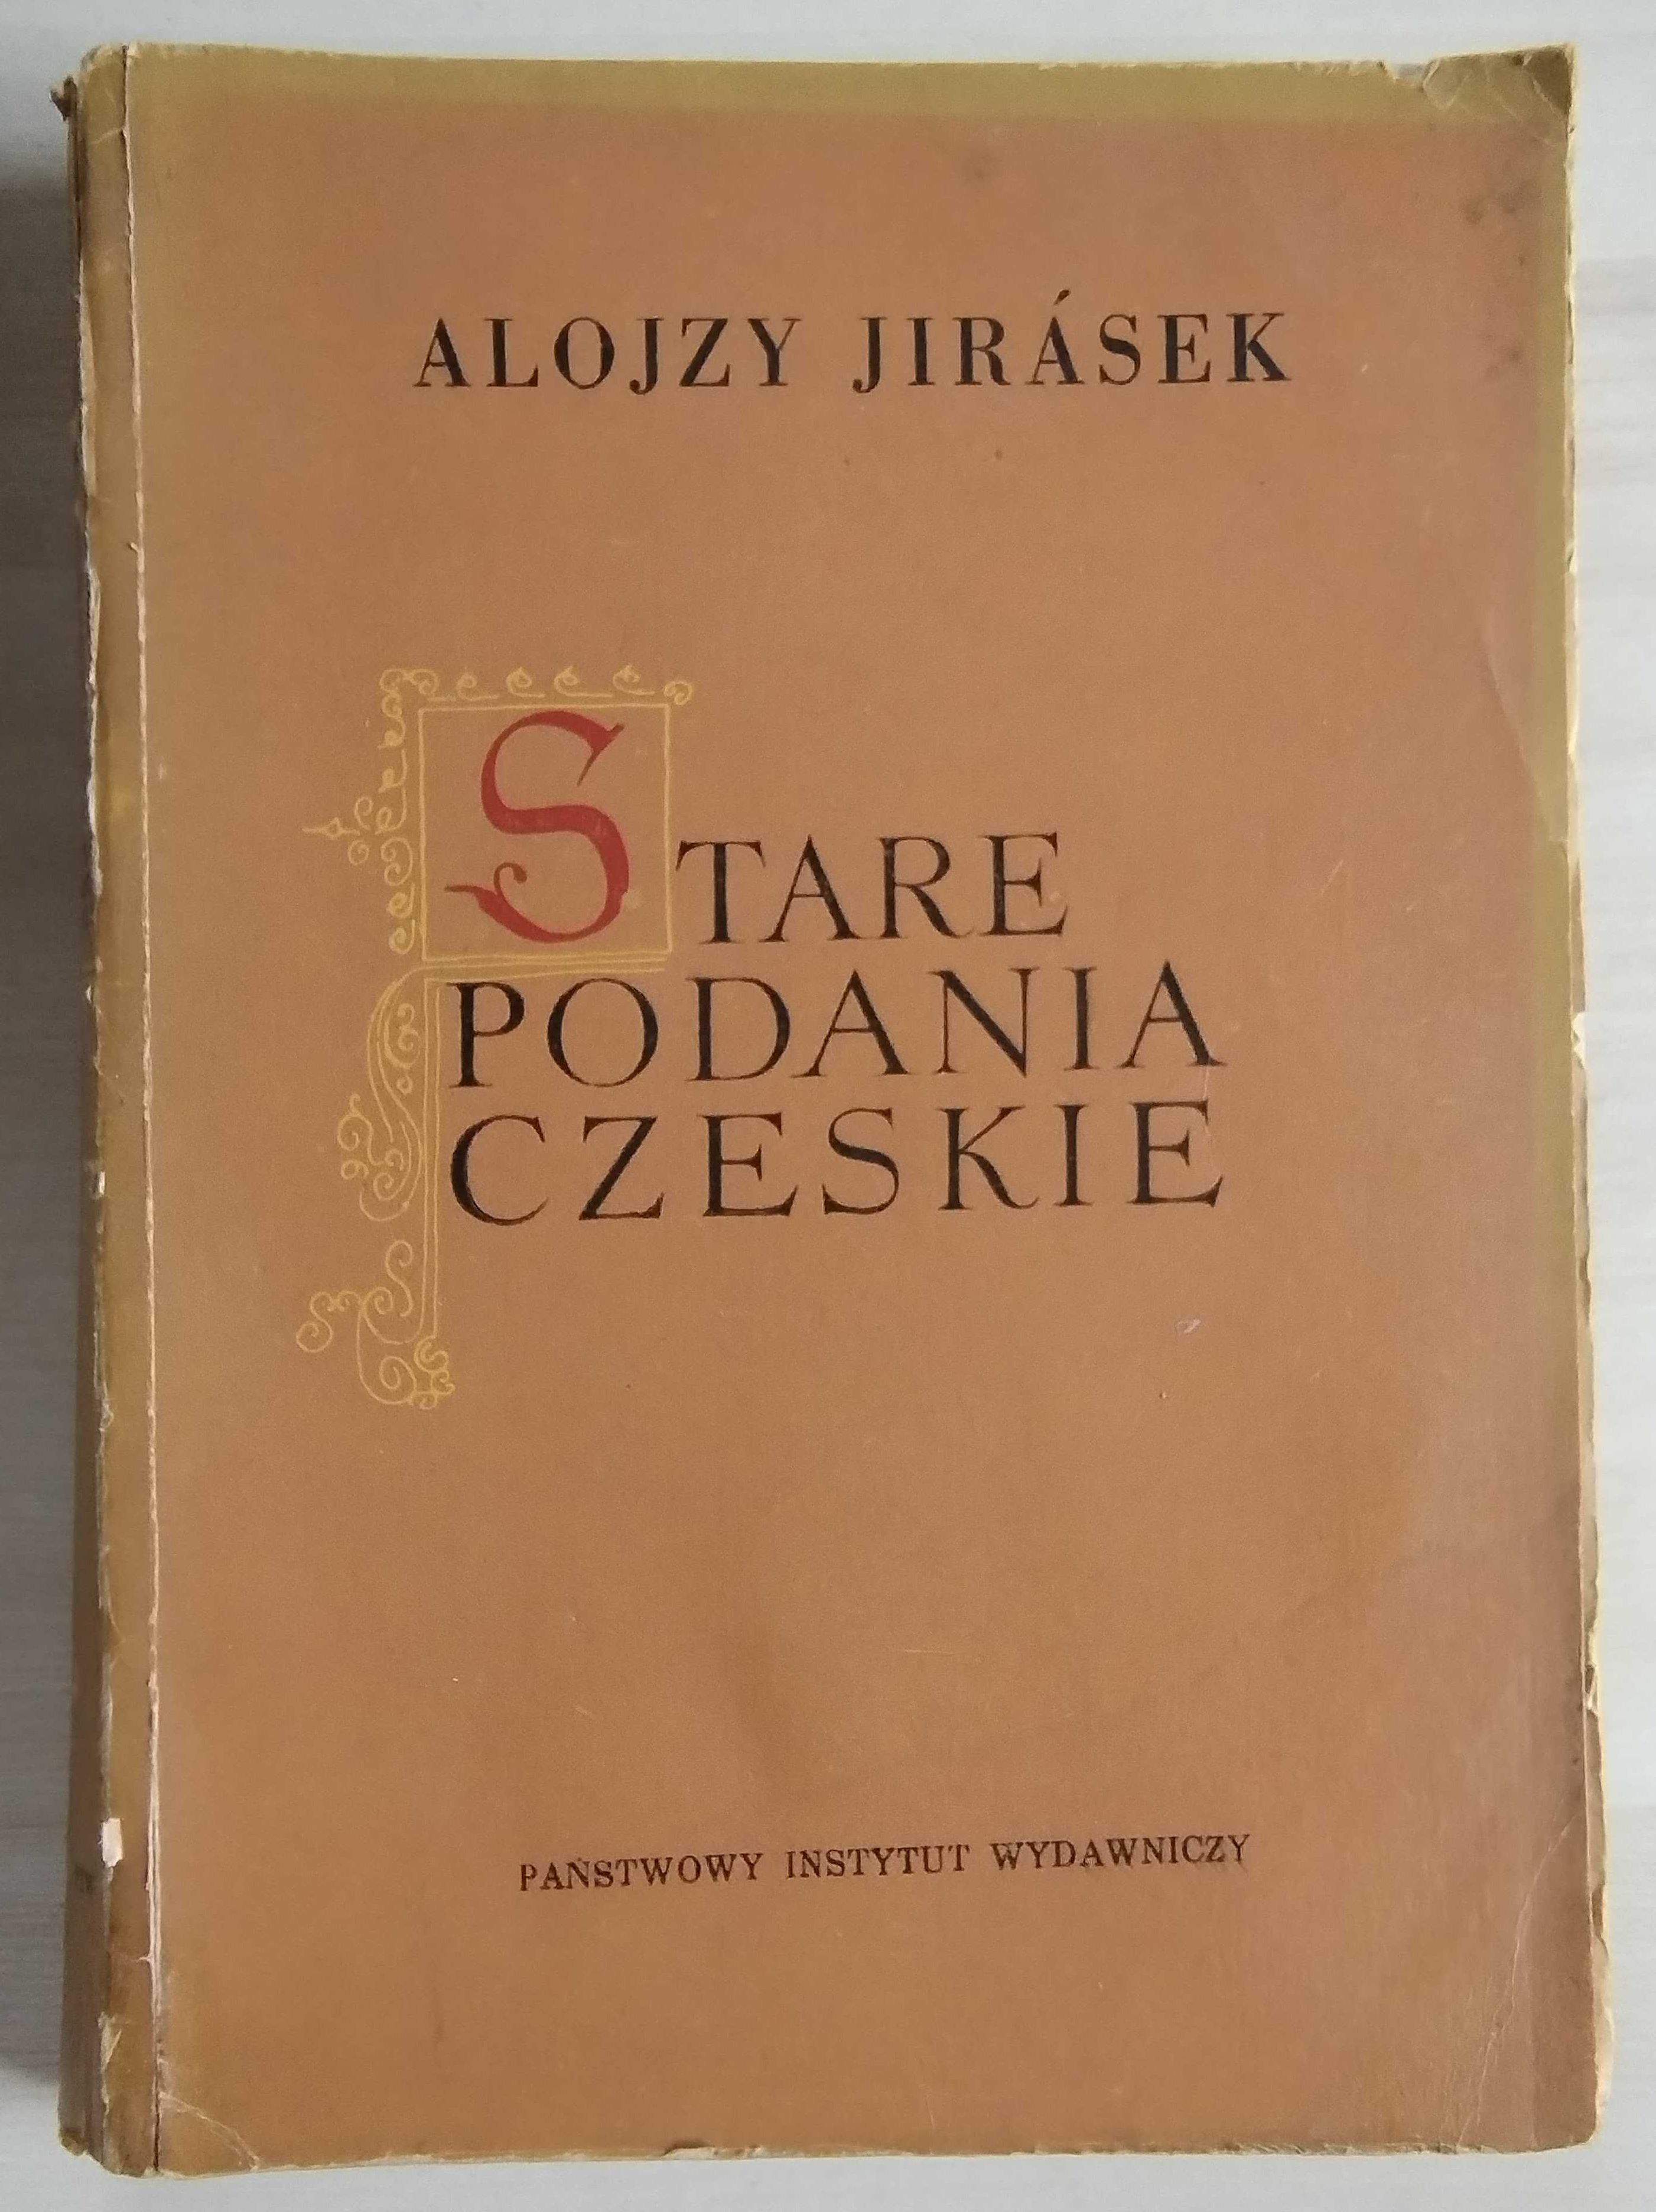 Stare podanie czeskie - Alojzy Jirasek, 1955 rok